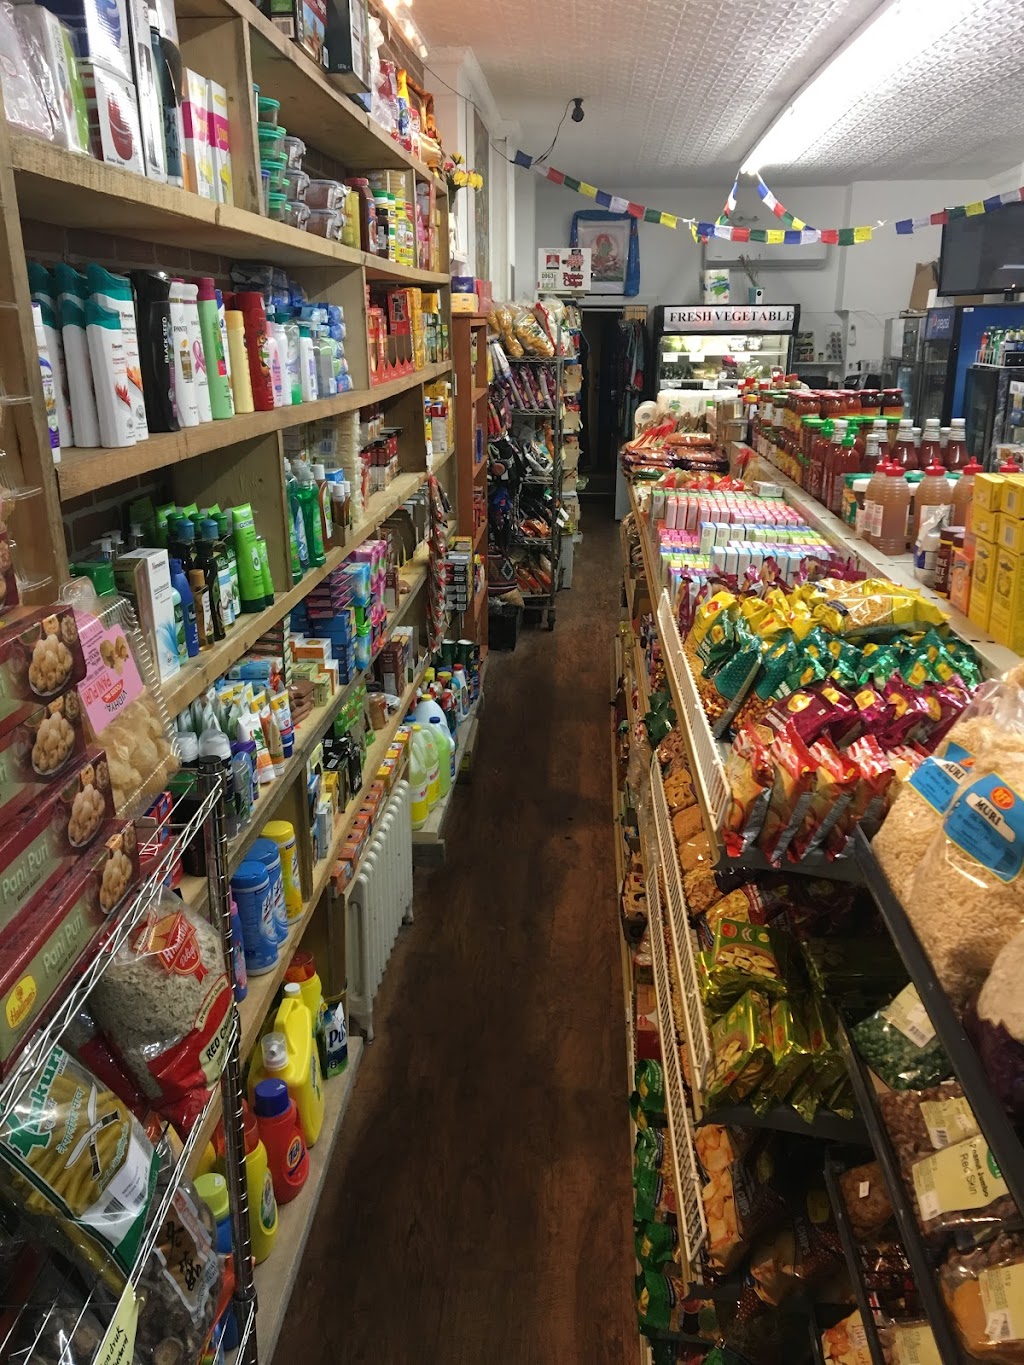 Mandala Foodstore (Groceries & Varieties) | 1506 Queen St W, Toronto, ON M6R 1A4, Canada | Phone: (647) 352-1234